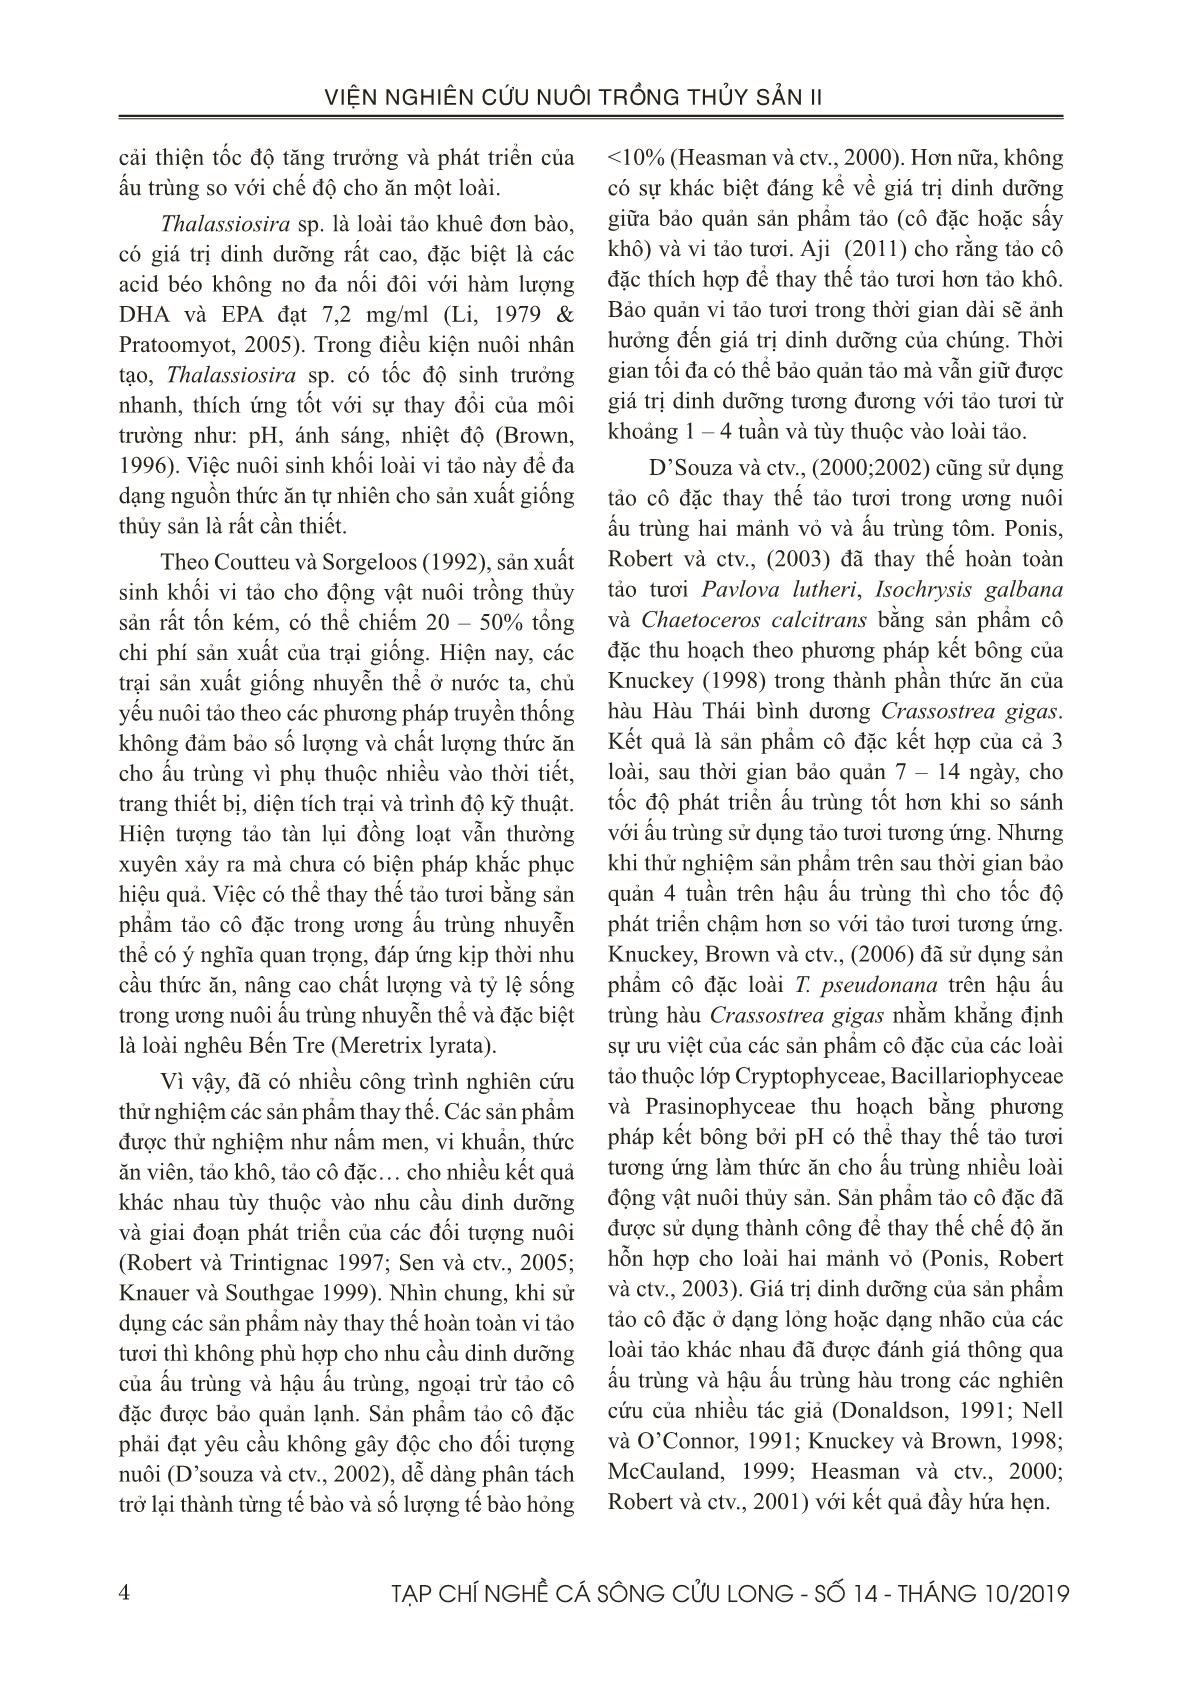 Tạp chí Nghề cá sông Cửu Long - Số 14 - Tháng 10/2019 trang 4